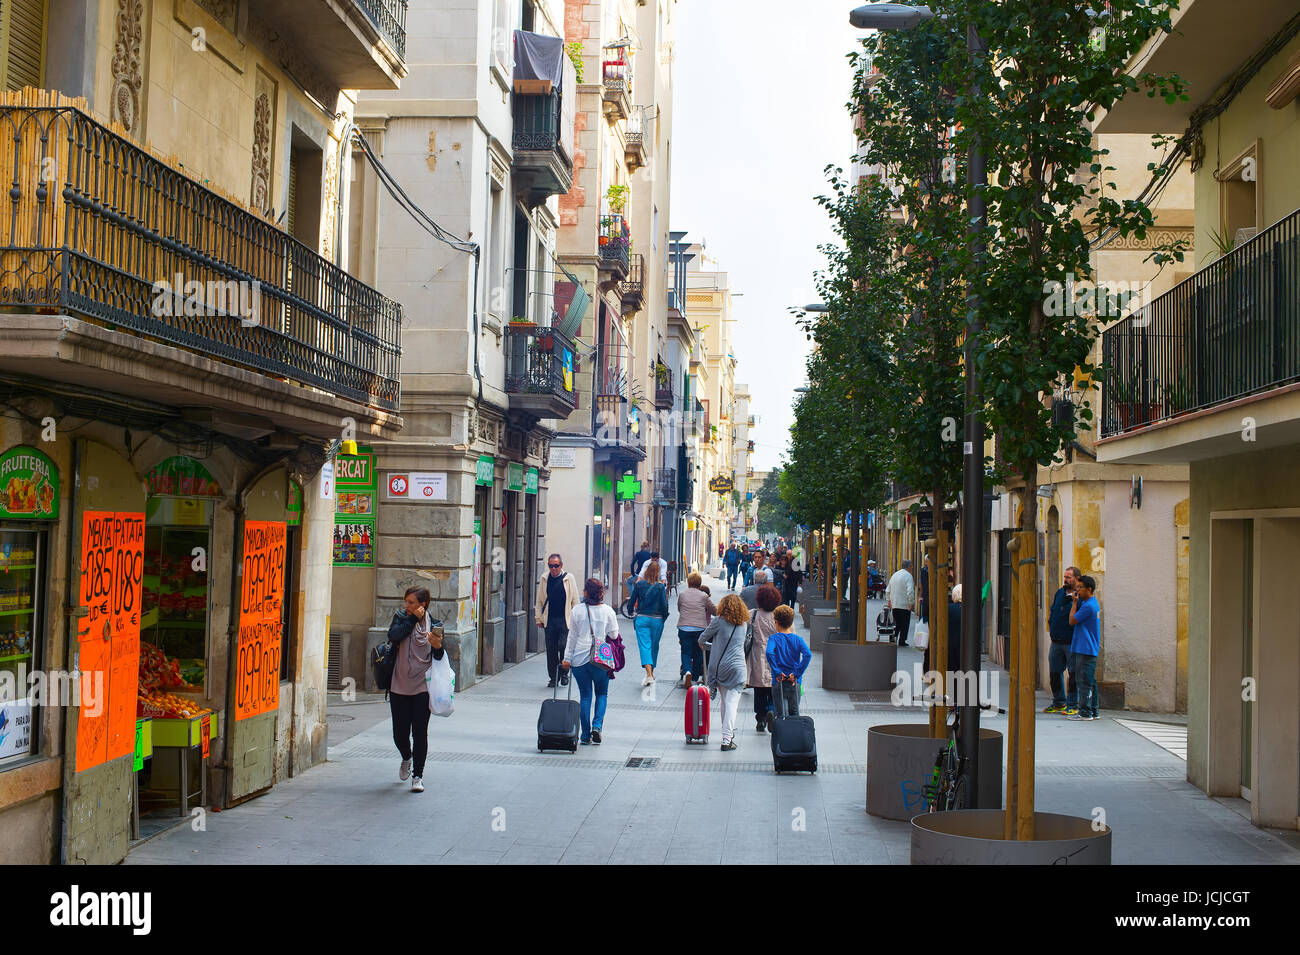 BARCELONA, Spanien - 3. November 2016: Unbekannte Passanten auf der Straße von Barcelona. Barcelona ist die Hauptstadt Stadt von Katalonien in Spanien mit einer popul Stockfoto